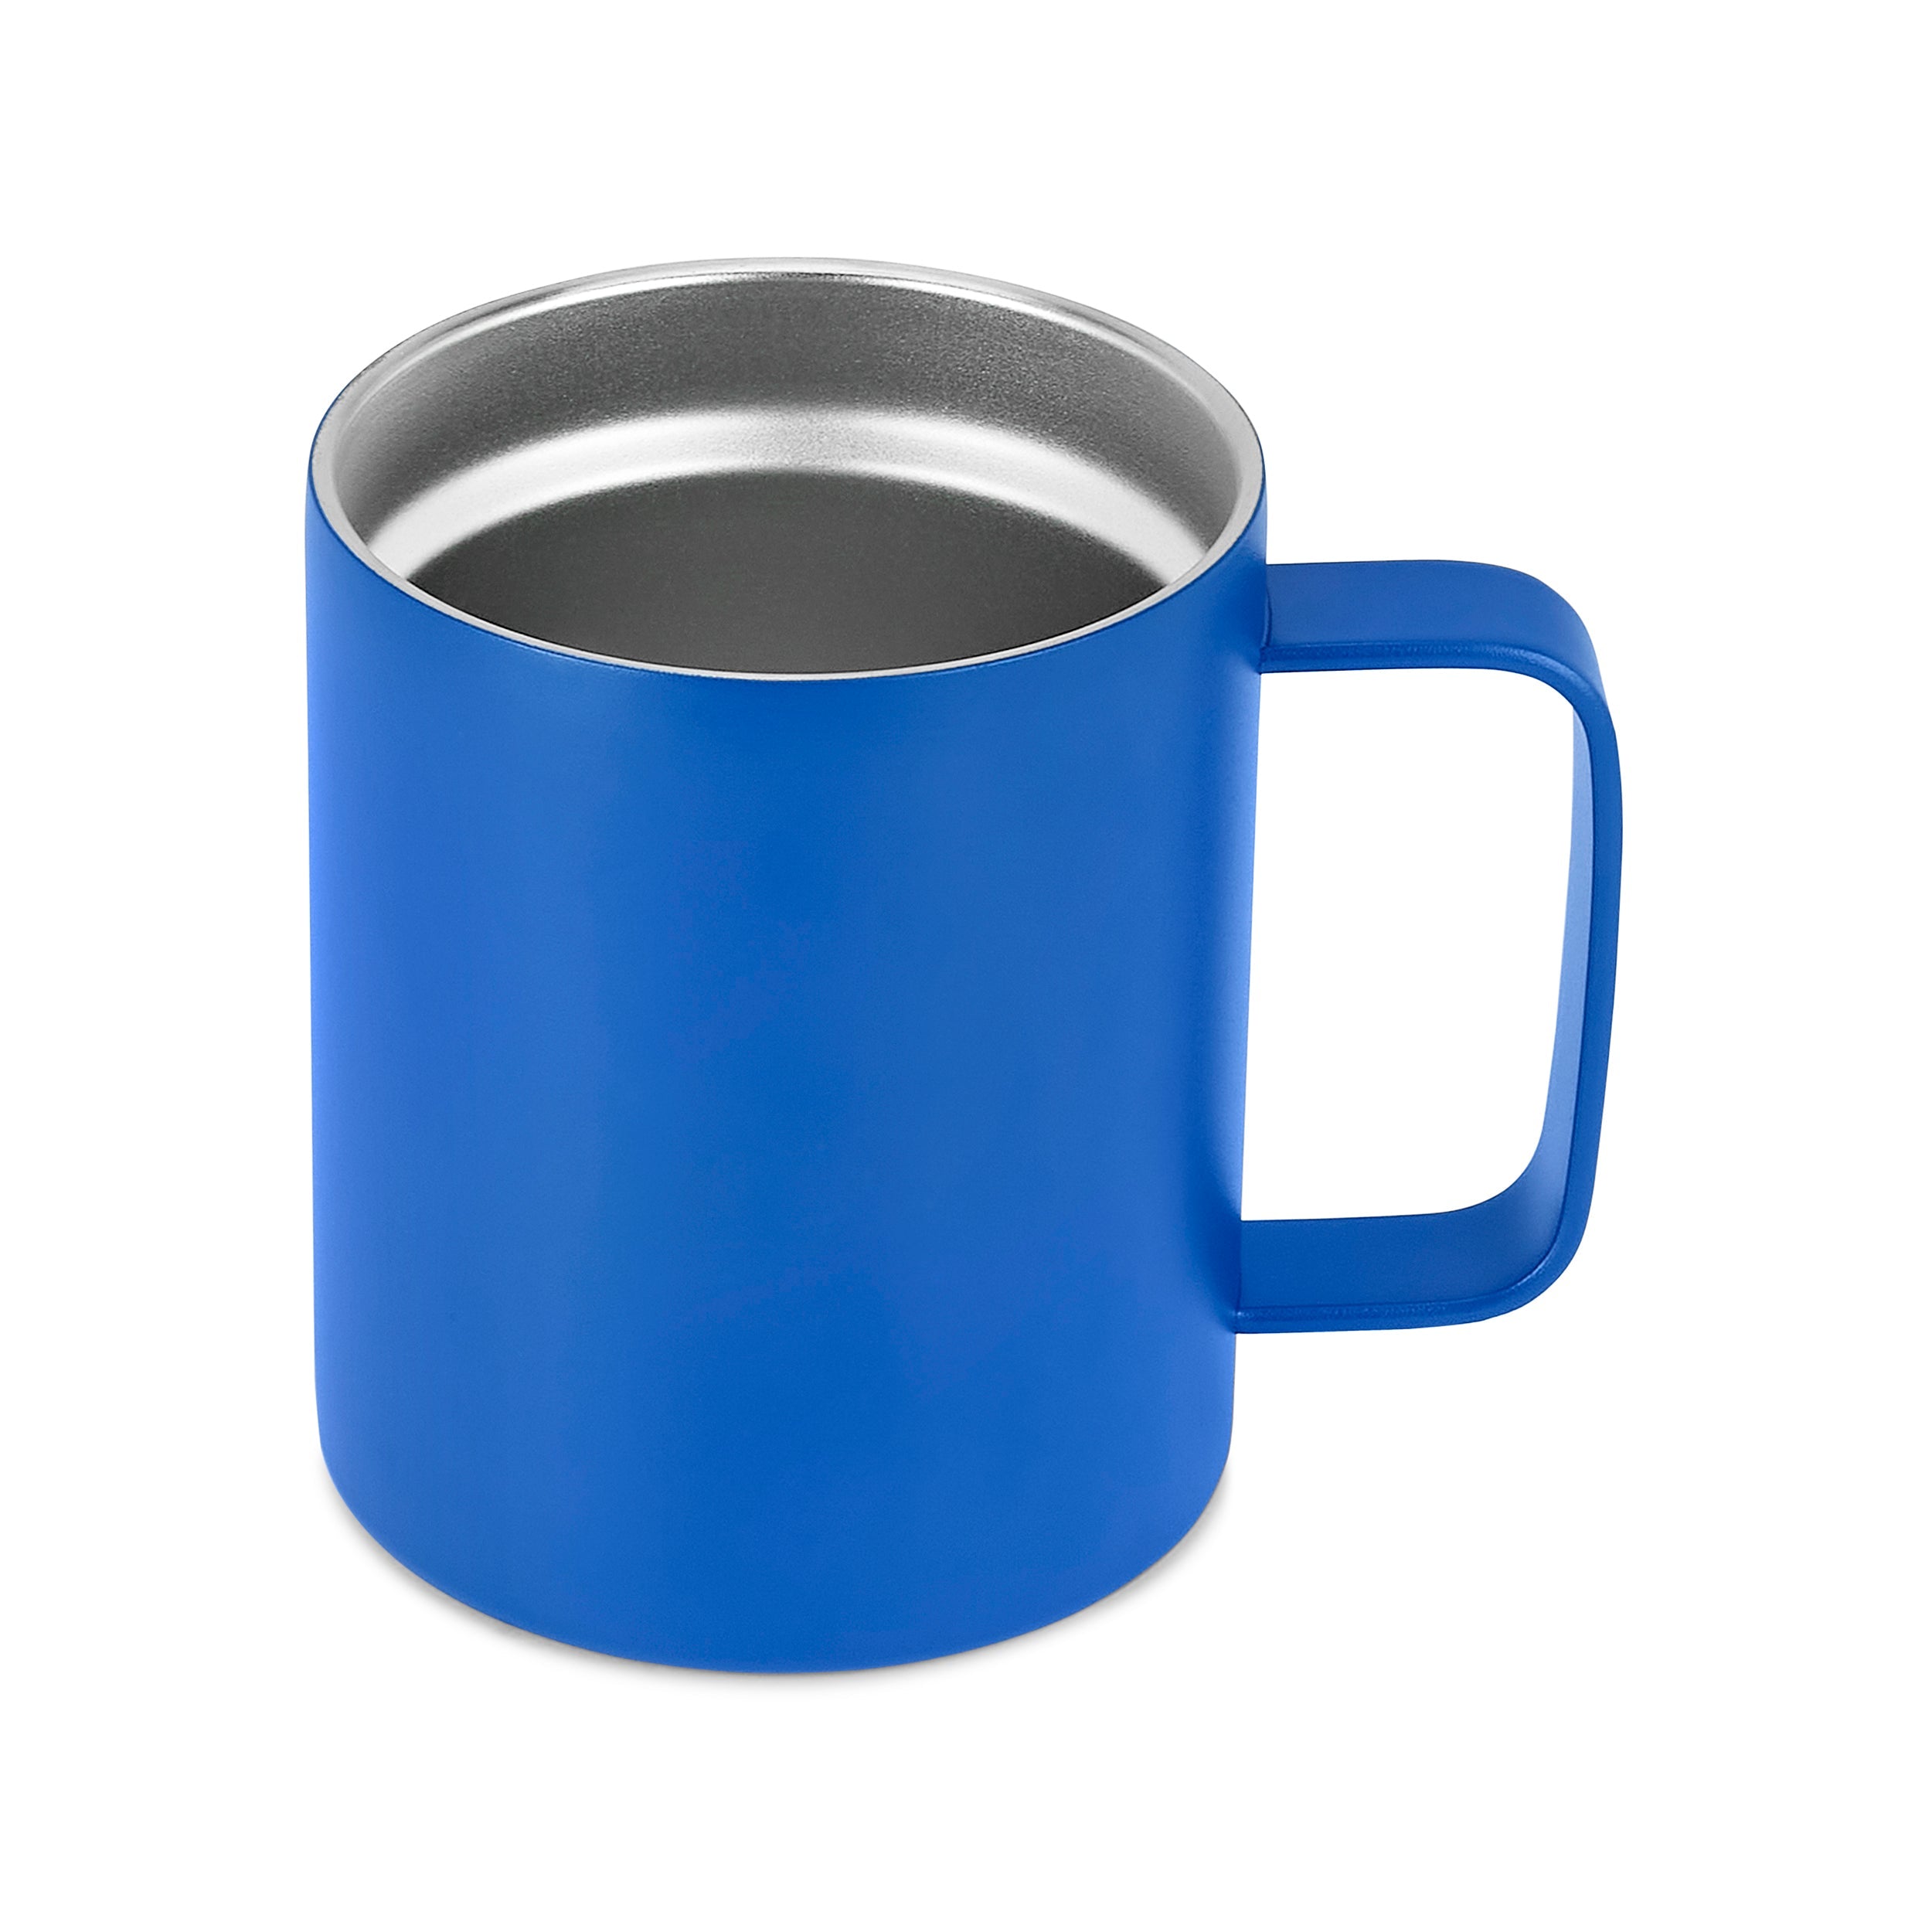 12oz Coffee Mug For Godmother